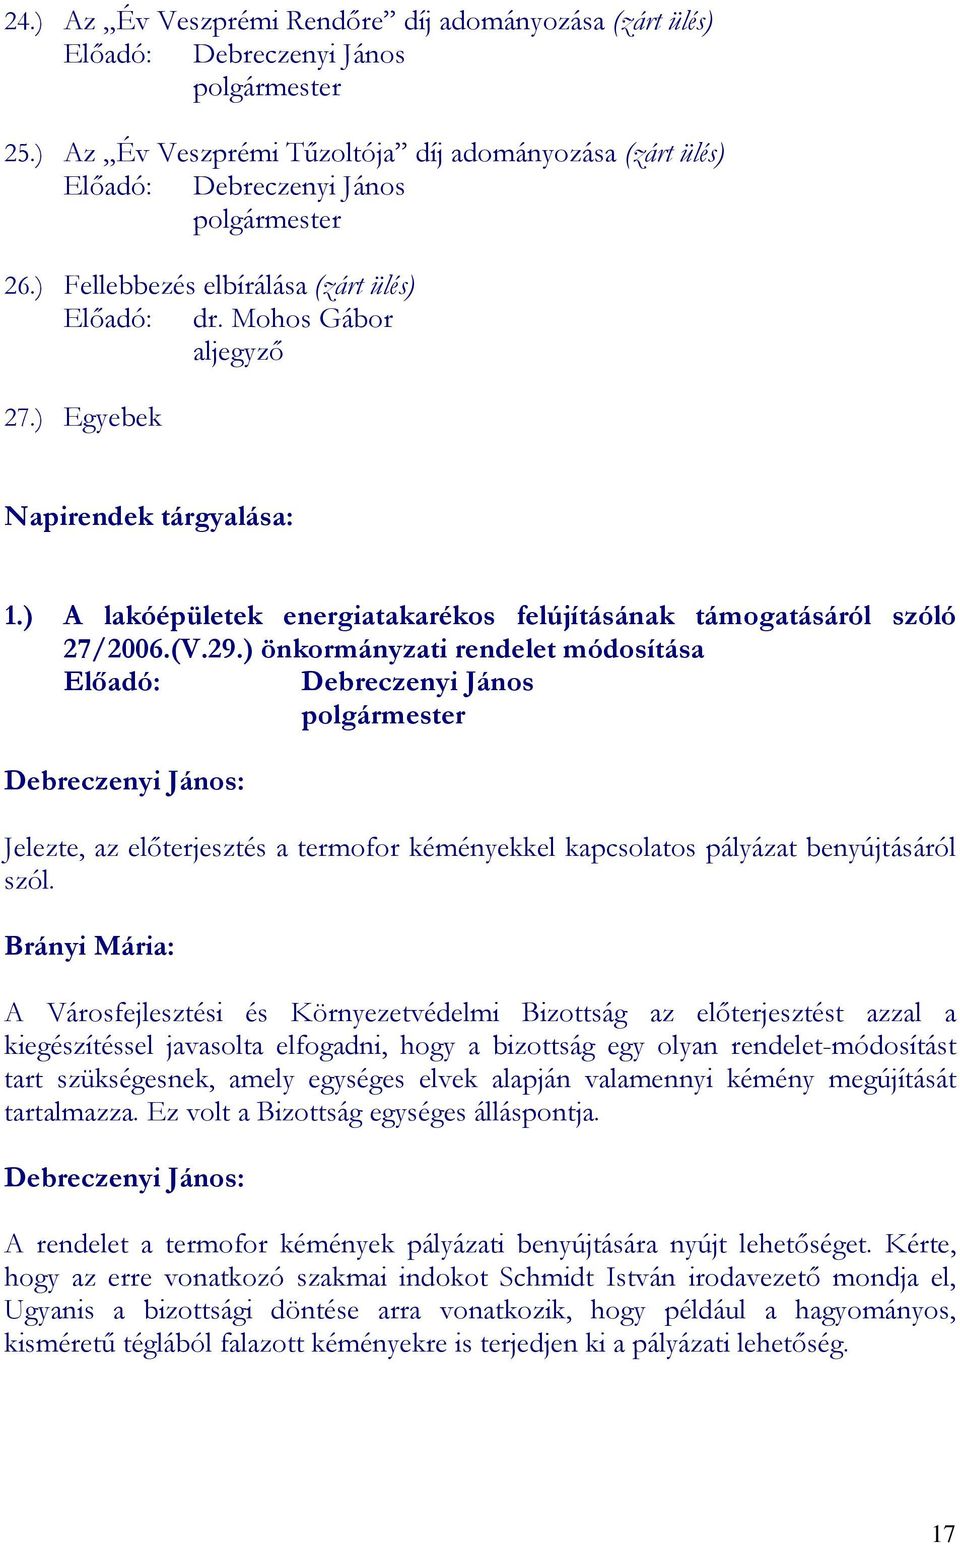 ) önkormányzati rendelet módosítása Elıadó: Debreczenyi János polgármester Jelezte, az elıterjesztés a termofor kéményekkel kapcsolatos pályázat benyújtásáról szól.